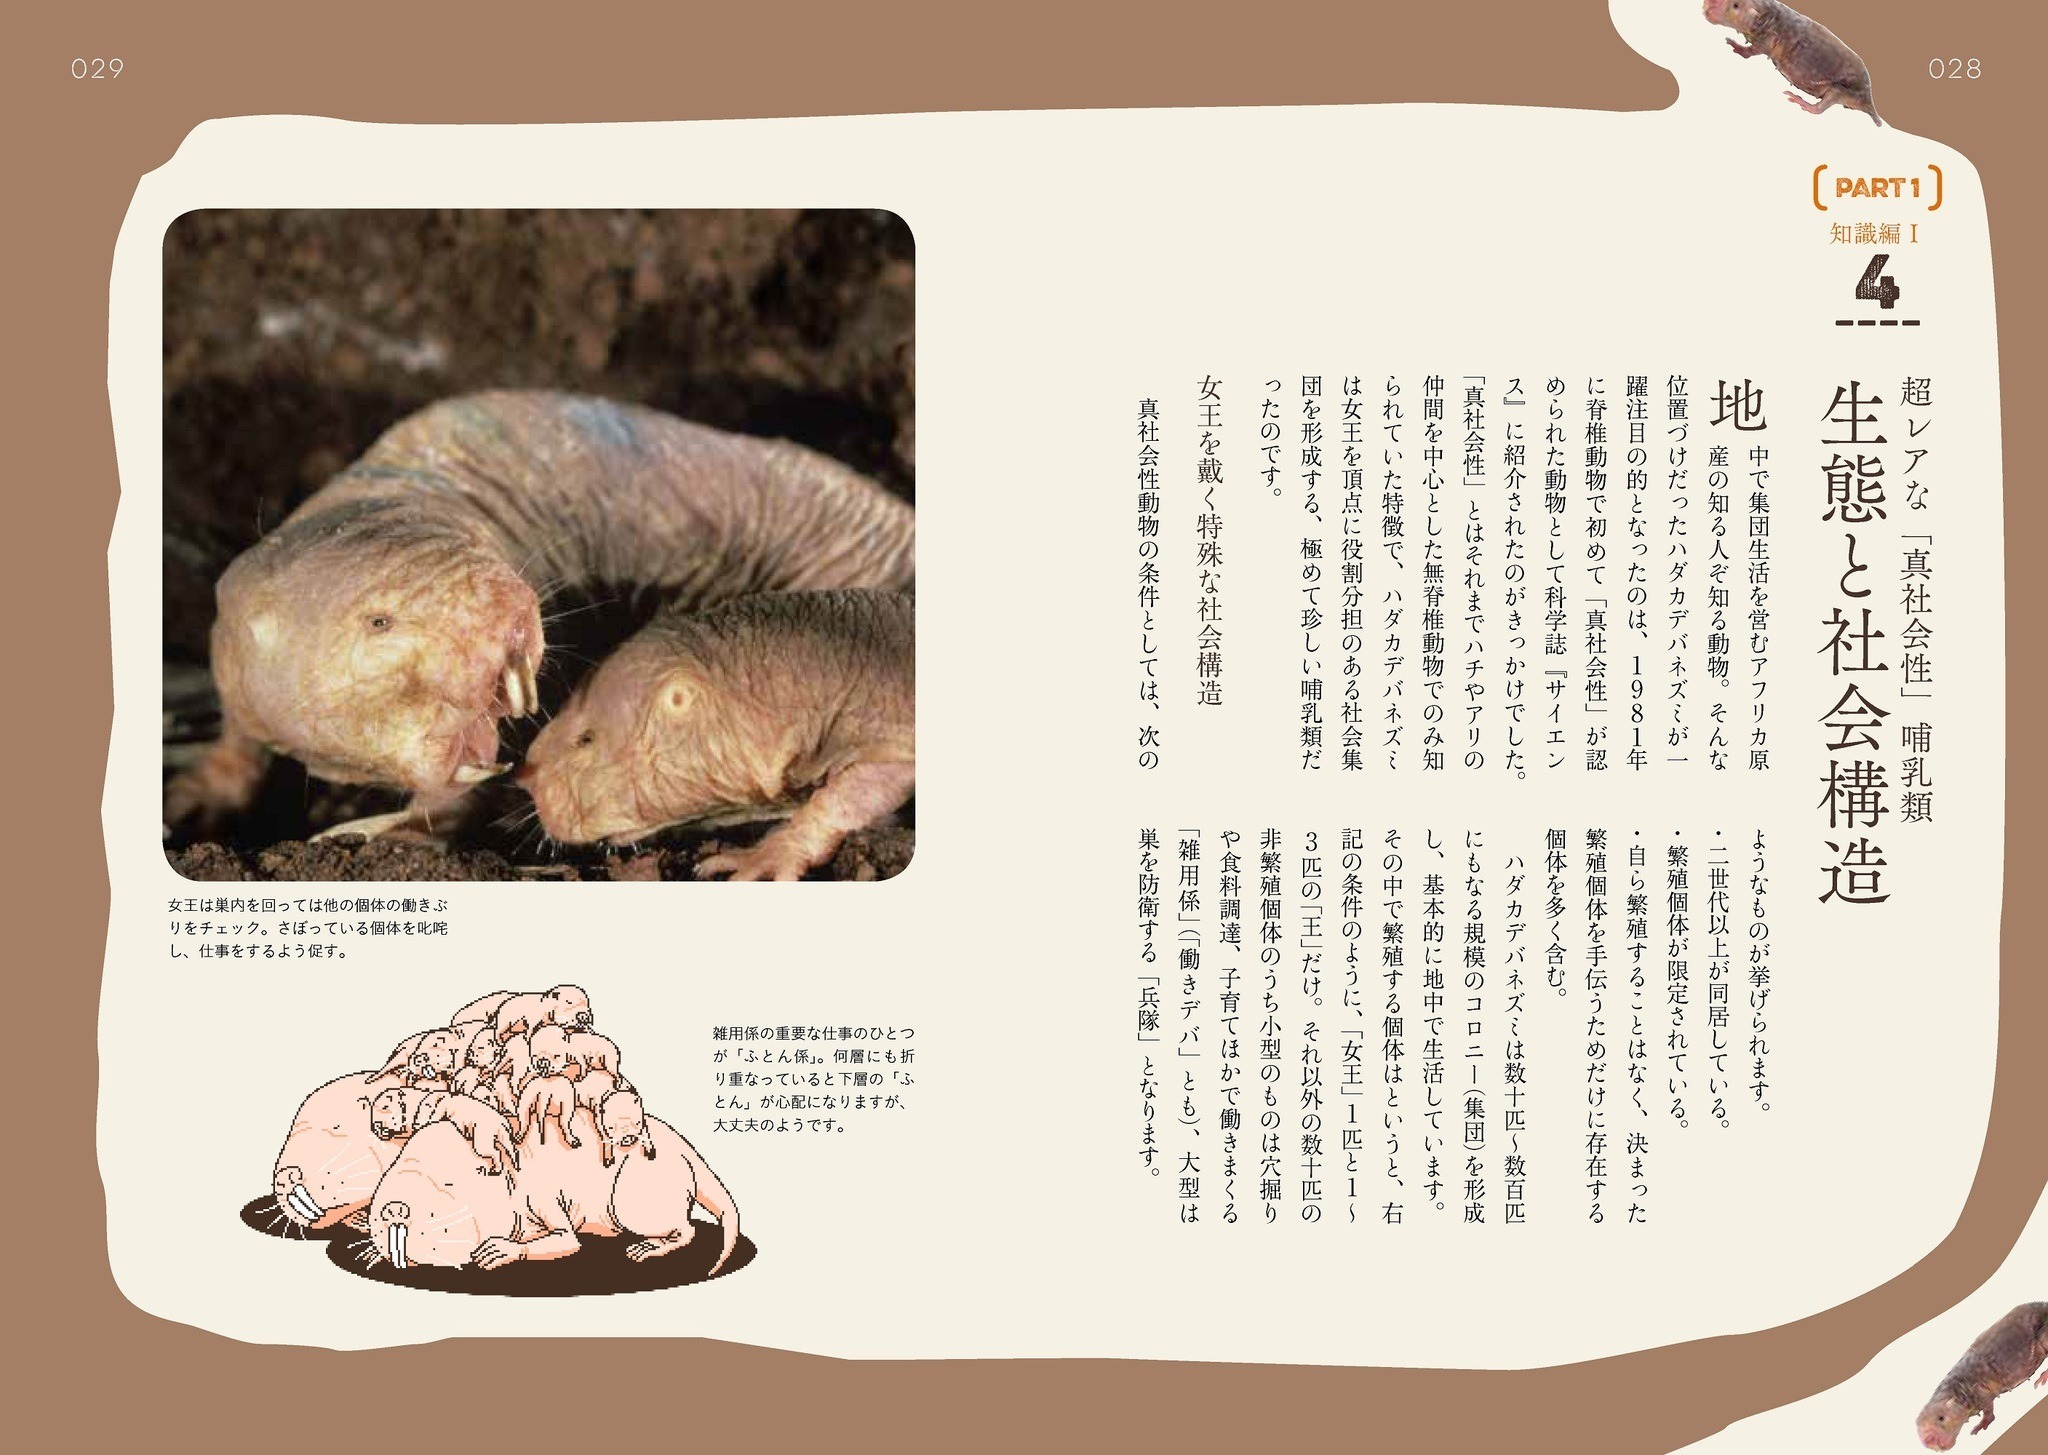 謎多き珍獣の驚異の生態を徹底解剖した書籍 ハダカデバネズミのひみつ 刊行 エクスナレッジ 4枚目の写真 画像 動物のリアルを伝えるwebメディア Reanimal